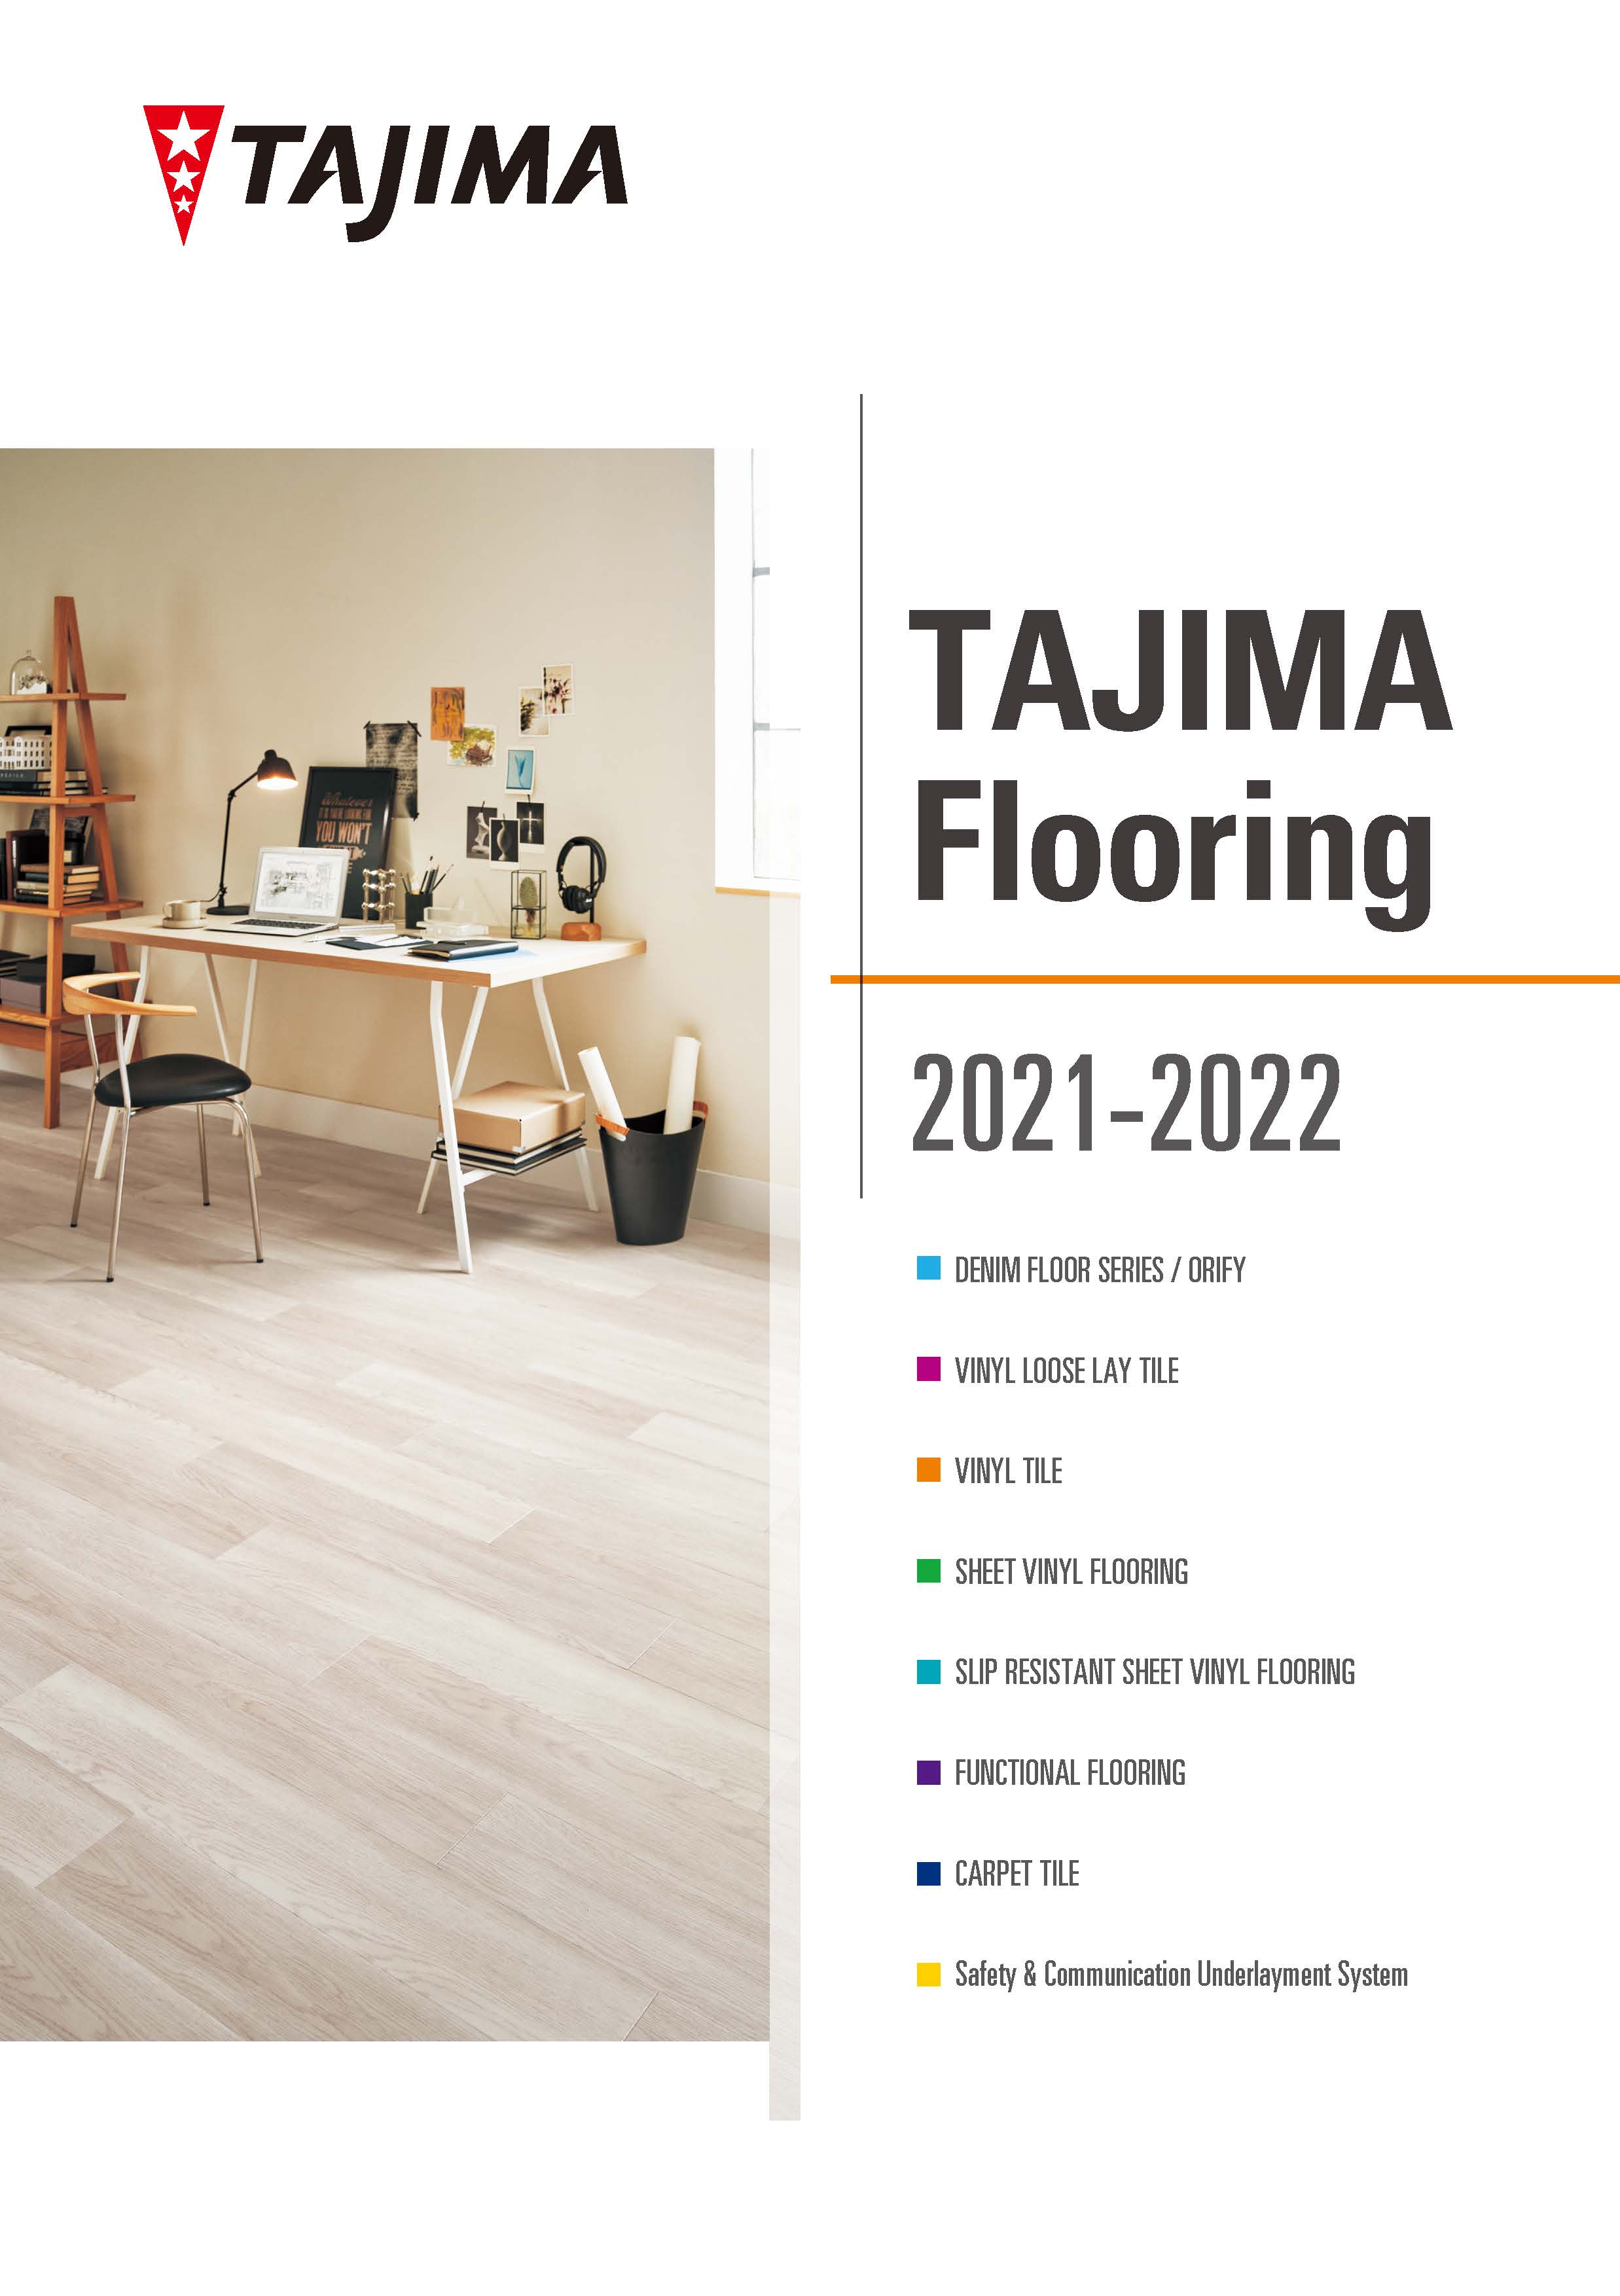 TAJIMA FLOORING Catalog 2021 - 2022